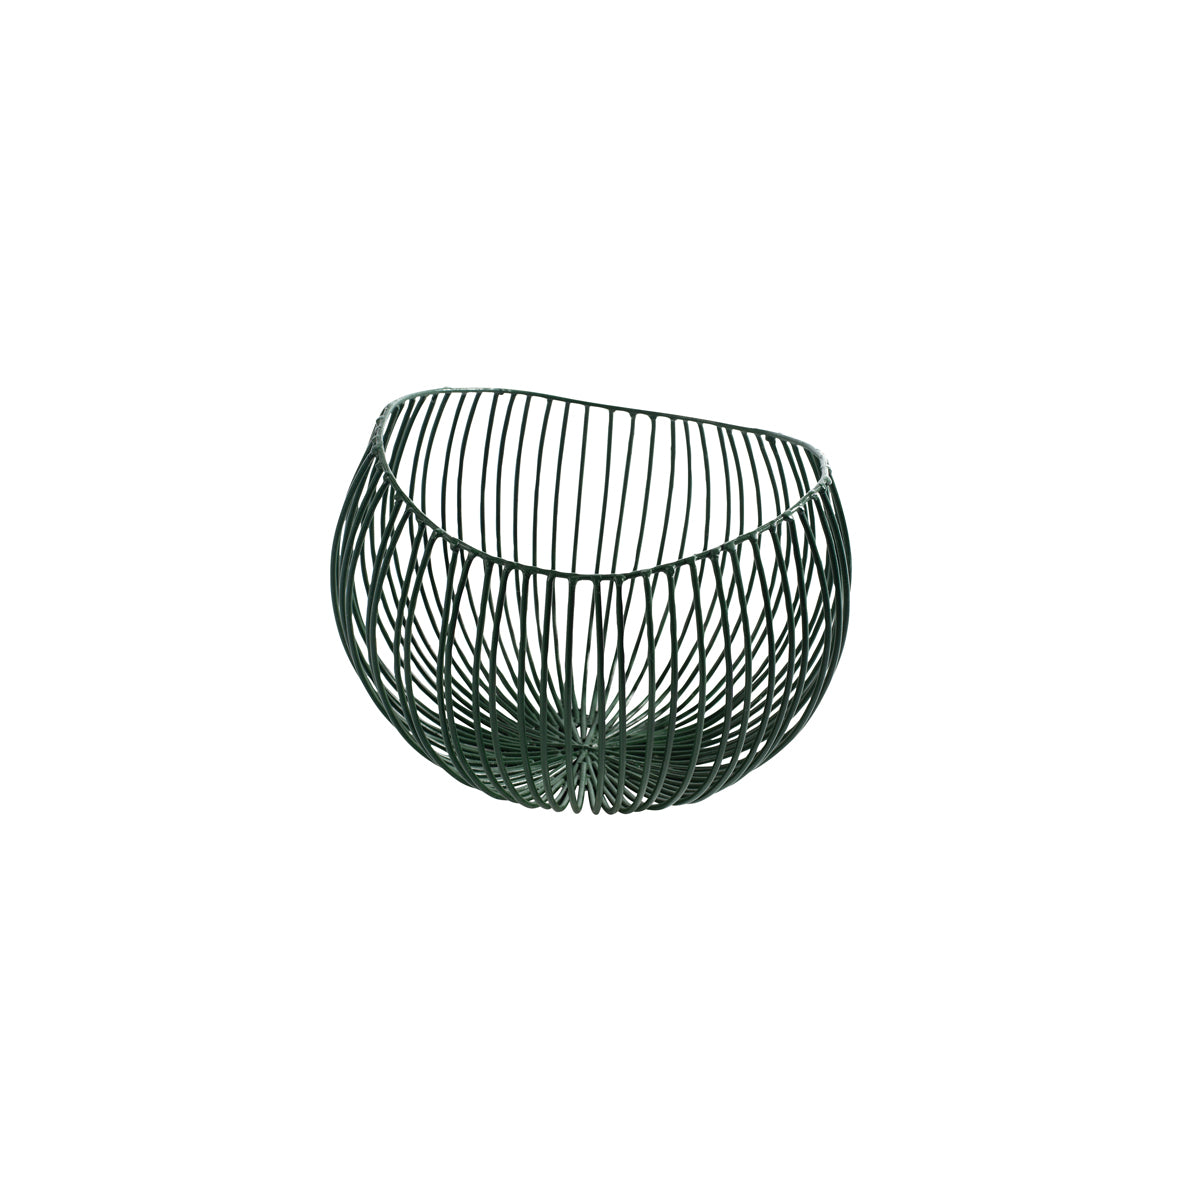 SERAXB7211275 Serax Serax Wire Basket Green Small 230x200x160mm Tomkin Australia Hospitality Supplies